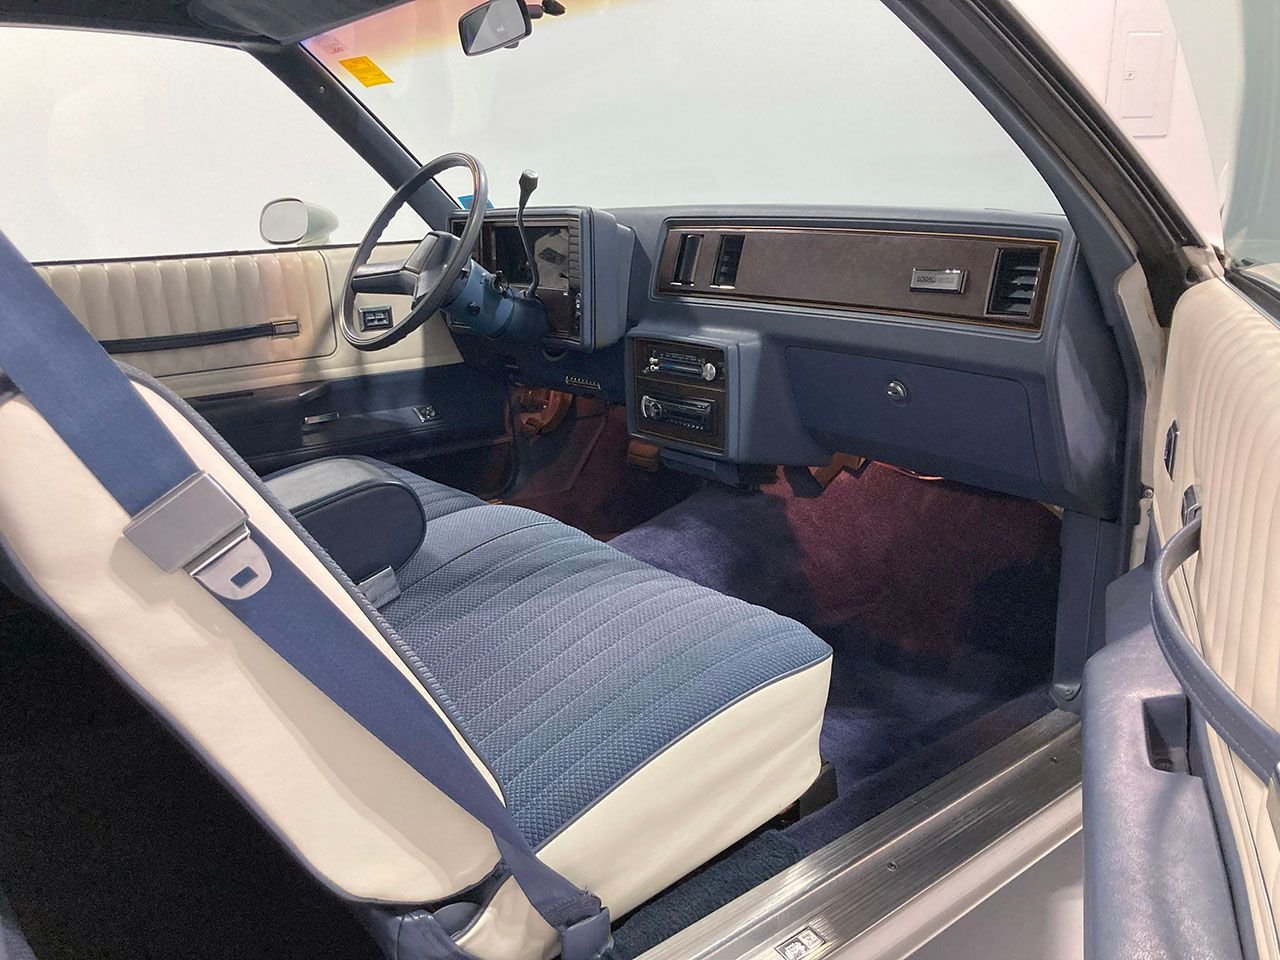 For Sale 1984 Chevrolet Monte Carlo